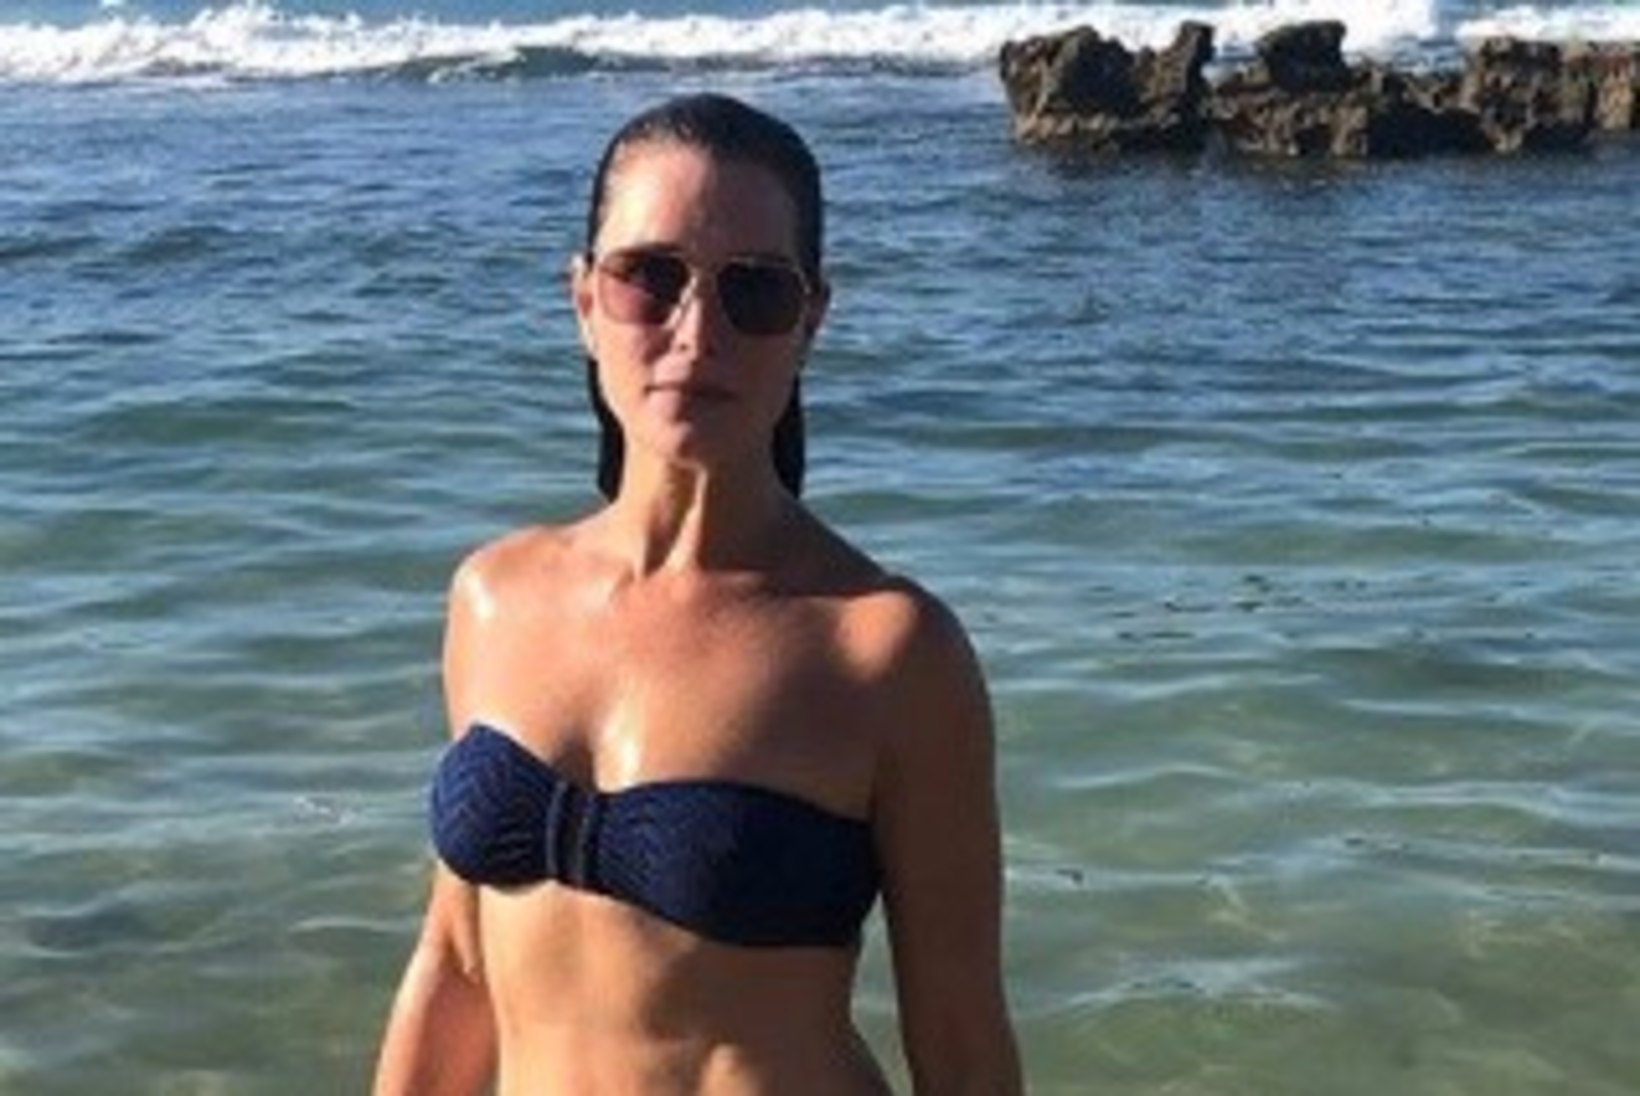 54aastane Brooke Shields näitas vapustavat rannavormi